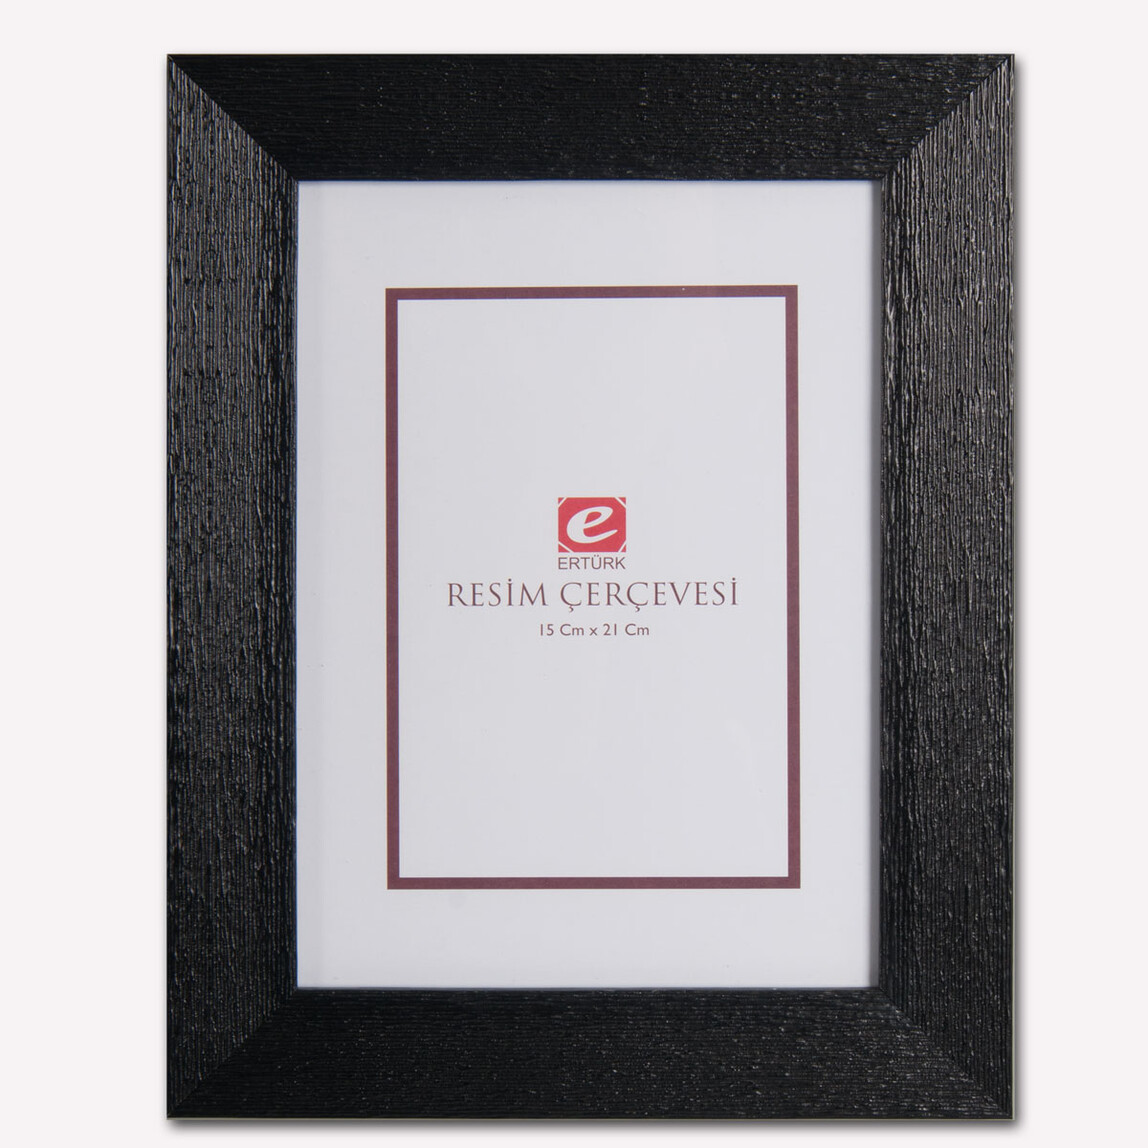    Ertürk Siyah Ağaç Kabuğu Resim Çerçevesi 15x21 cm  